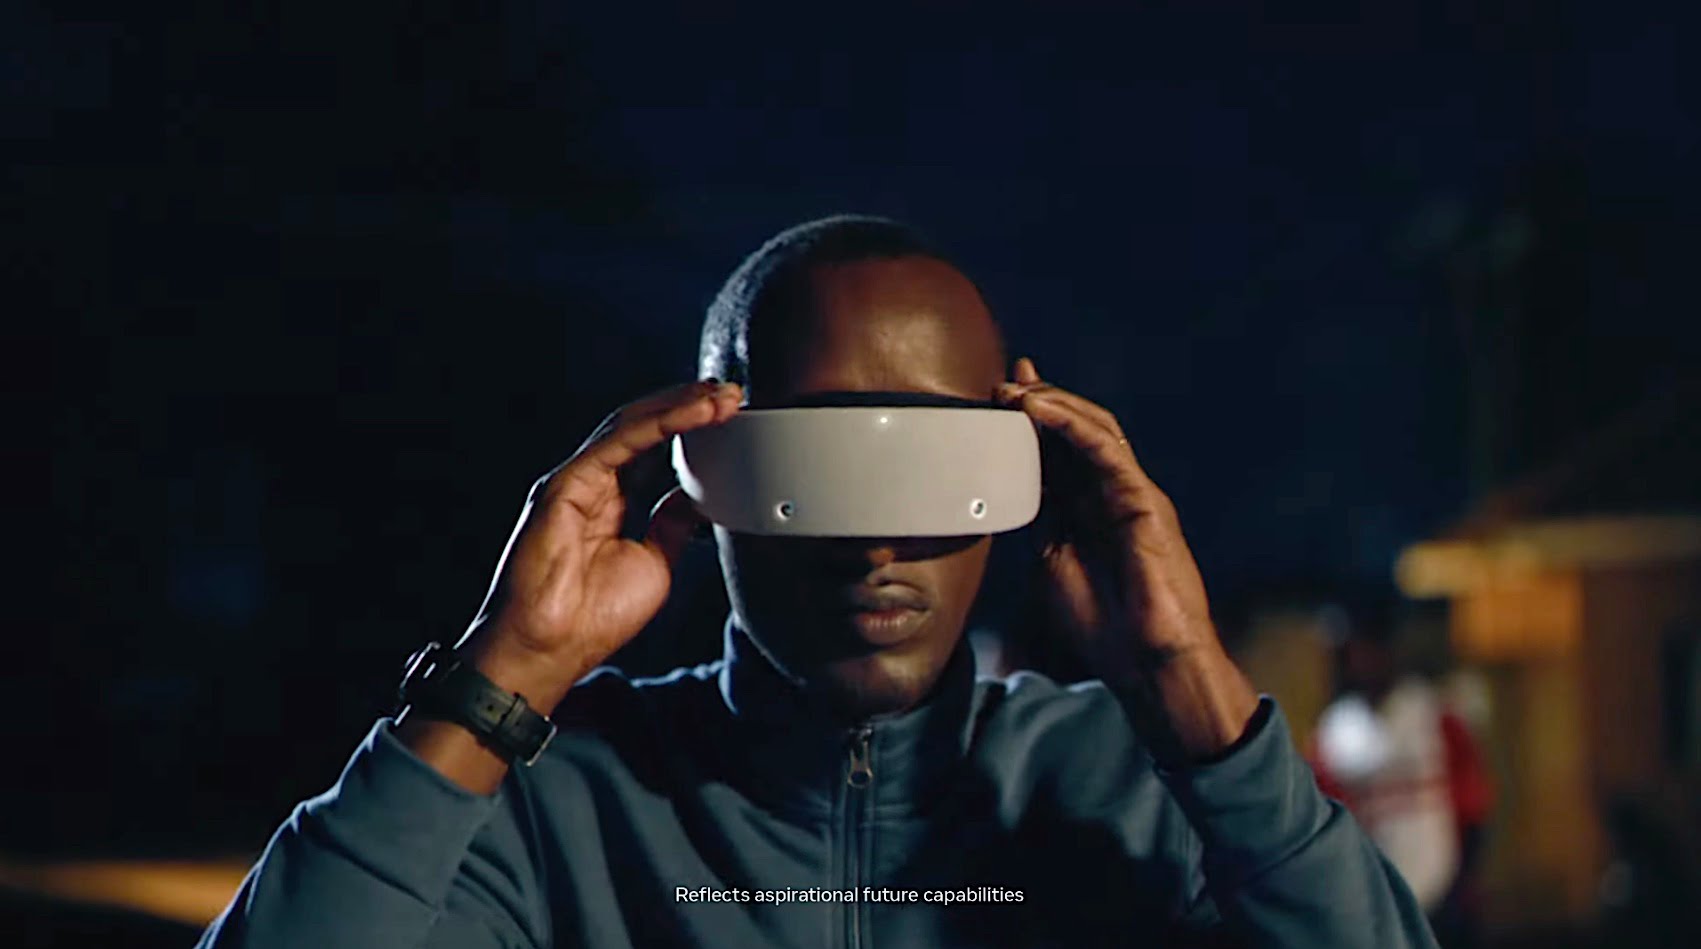 Metas neuer Werbespot zeigt futuristische Metaverse-Vision